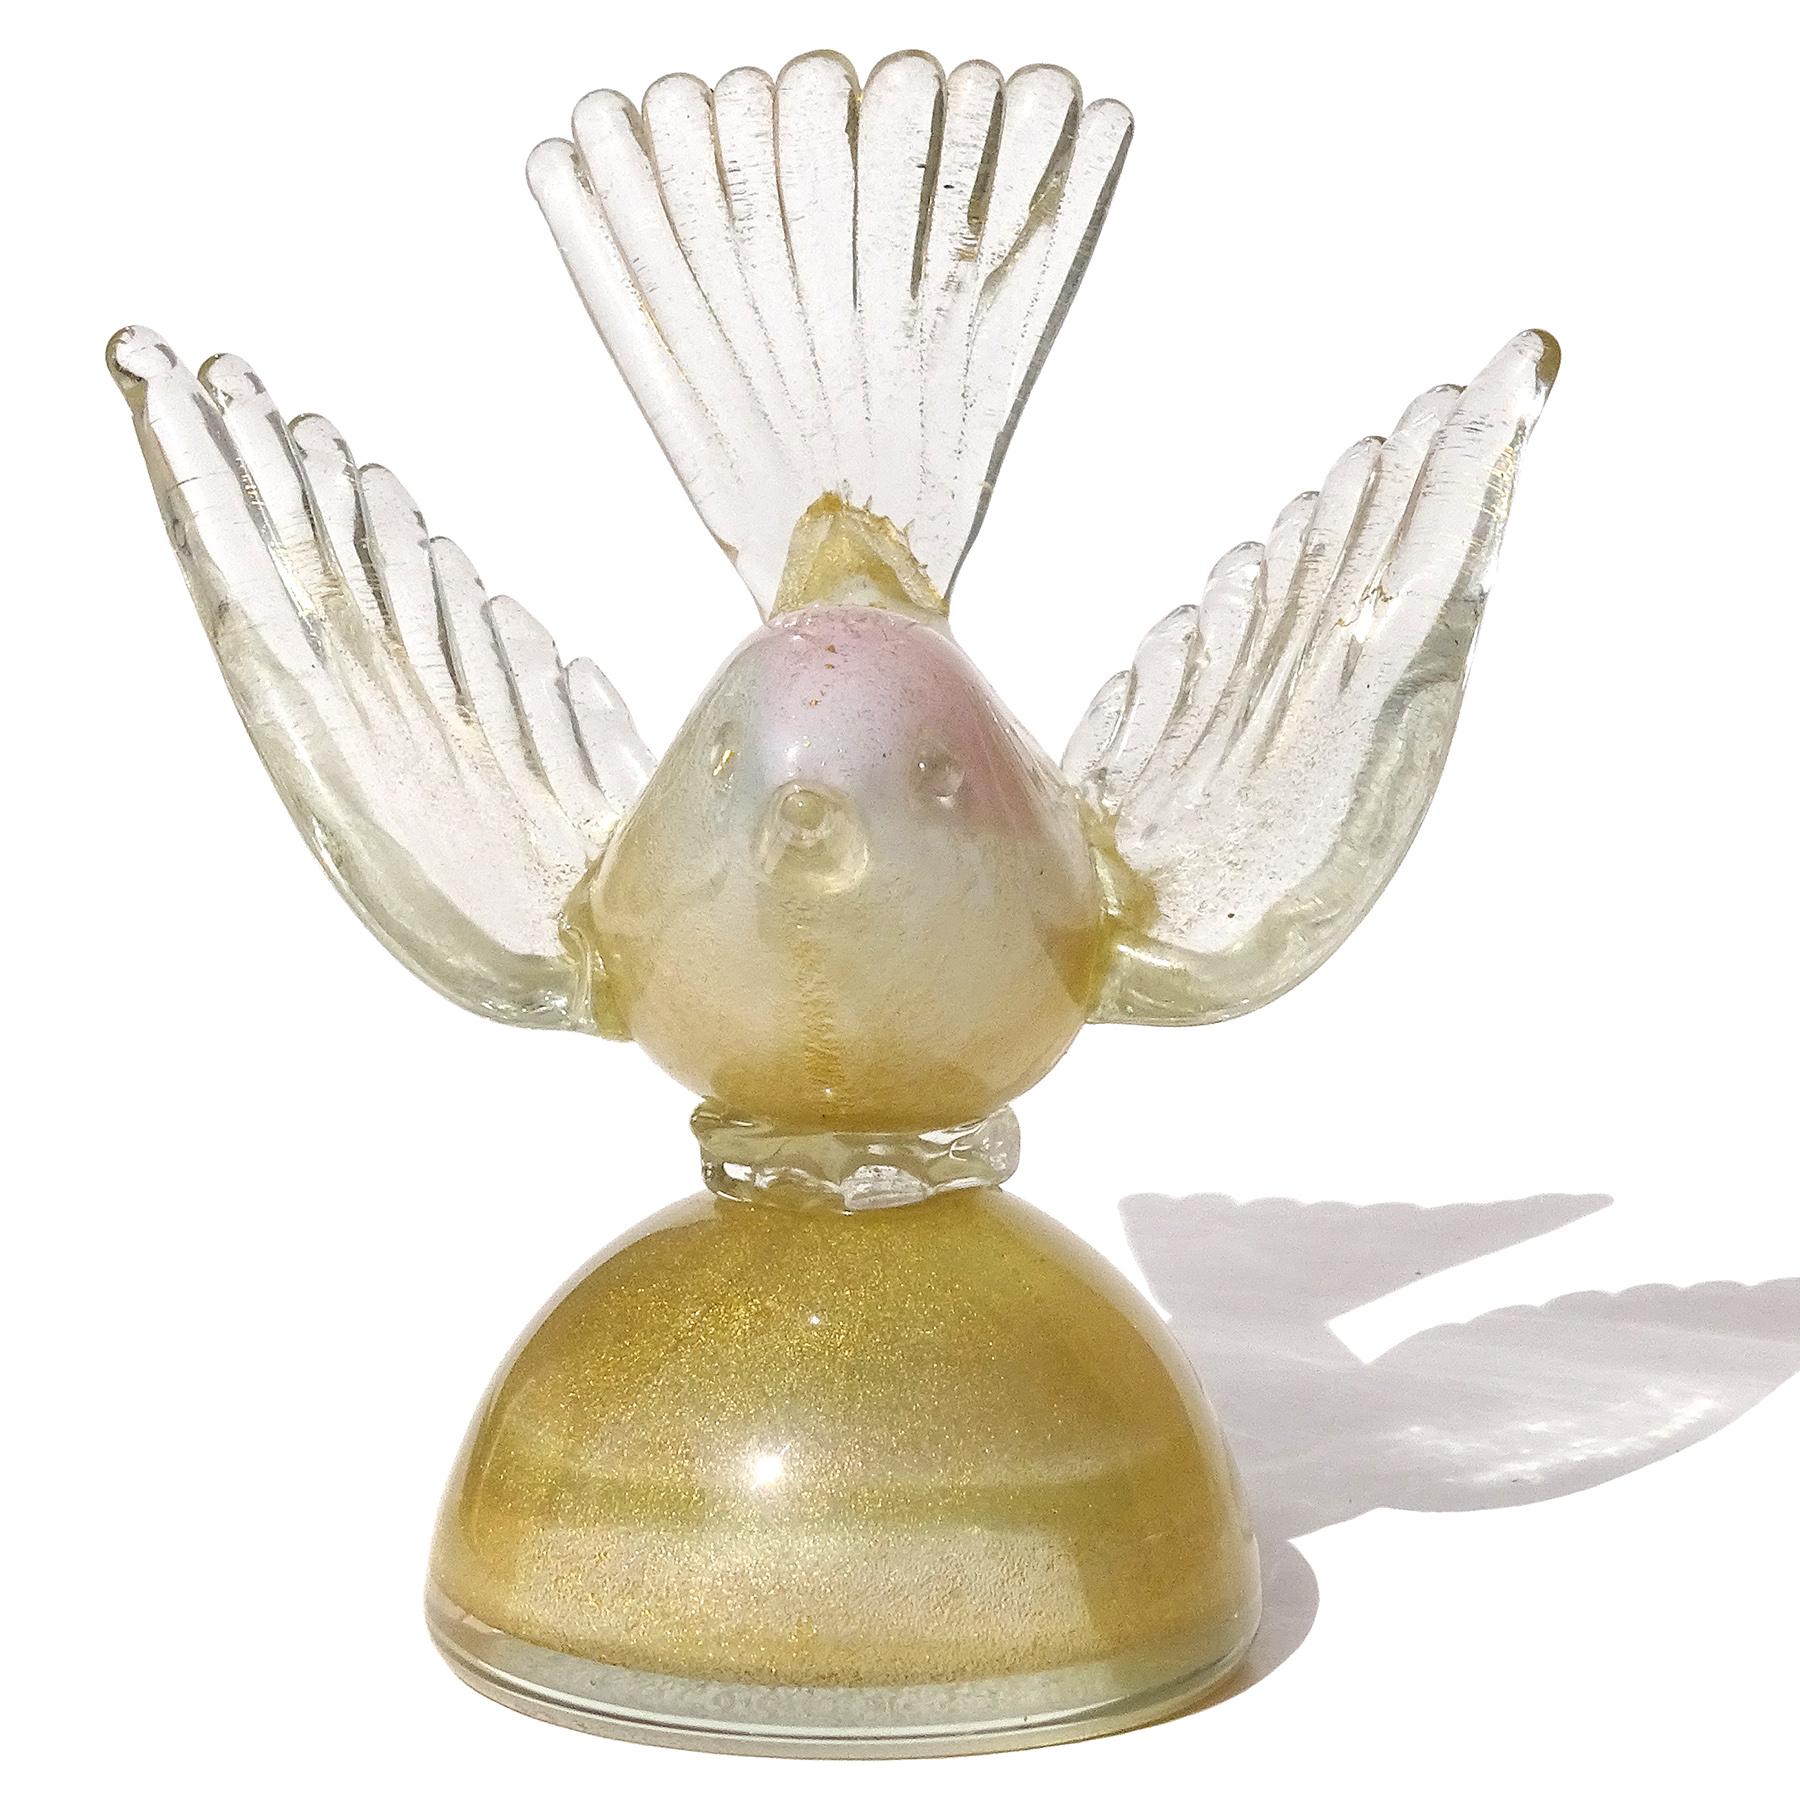 Magnifique figurine d'oiseau sur socle en verre d'art italien de Murano soufflé à la main, blanc, rose et mouchetures d'or, presse-papier. Documenté au designer Alfredo Barbini, vers les années 1950-60. L'oiseau a une tache de couleur rose sur le